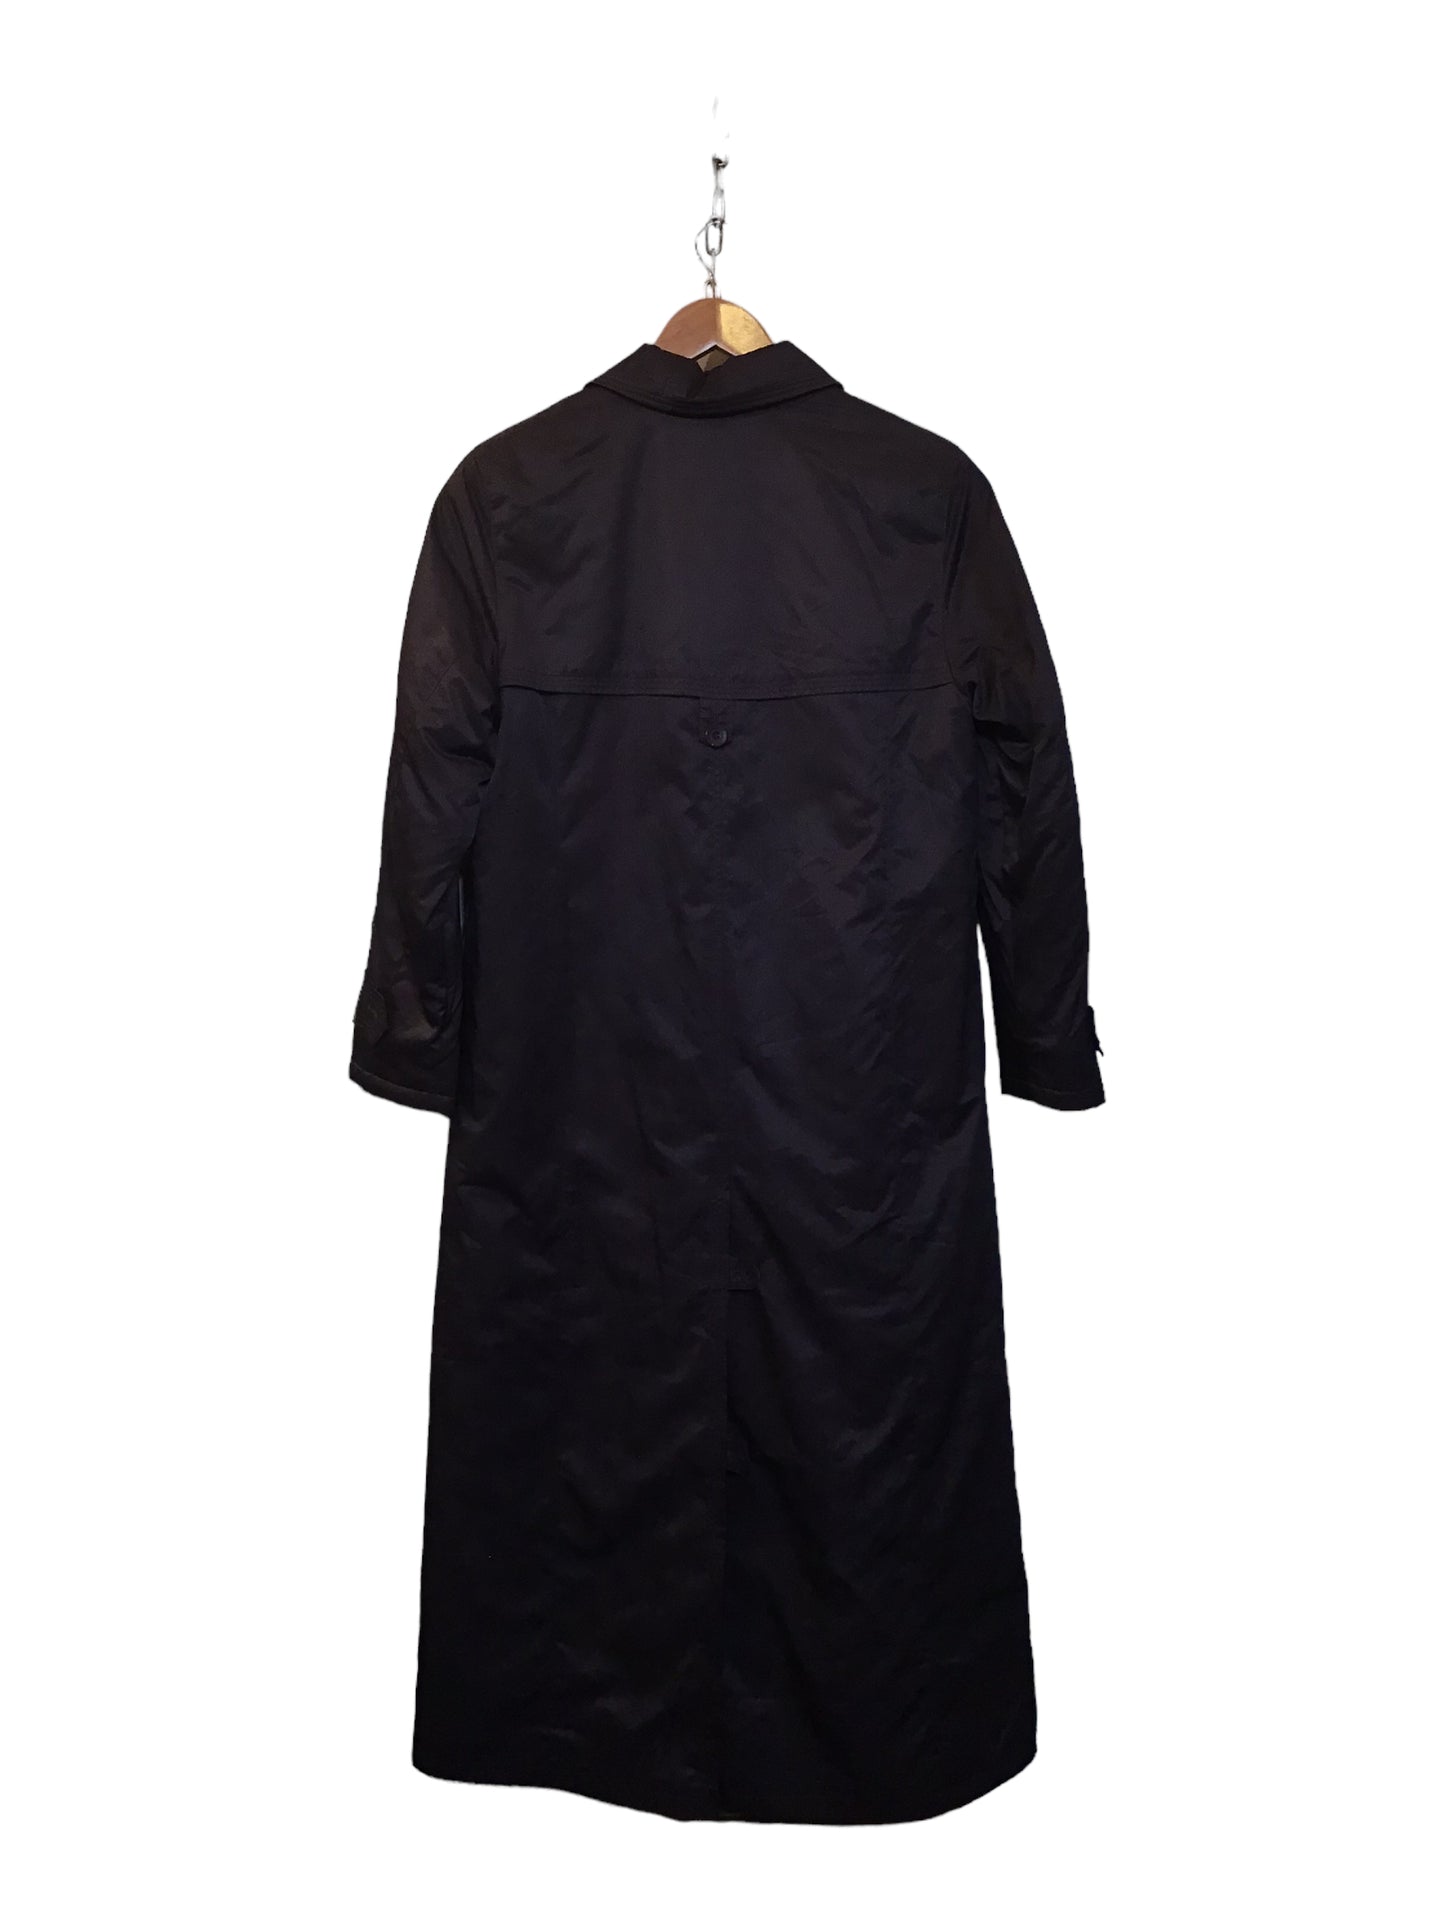 Women’s Long Length Coat (Size XL)